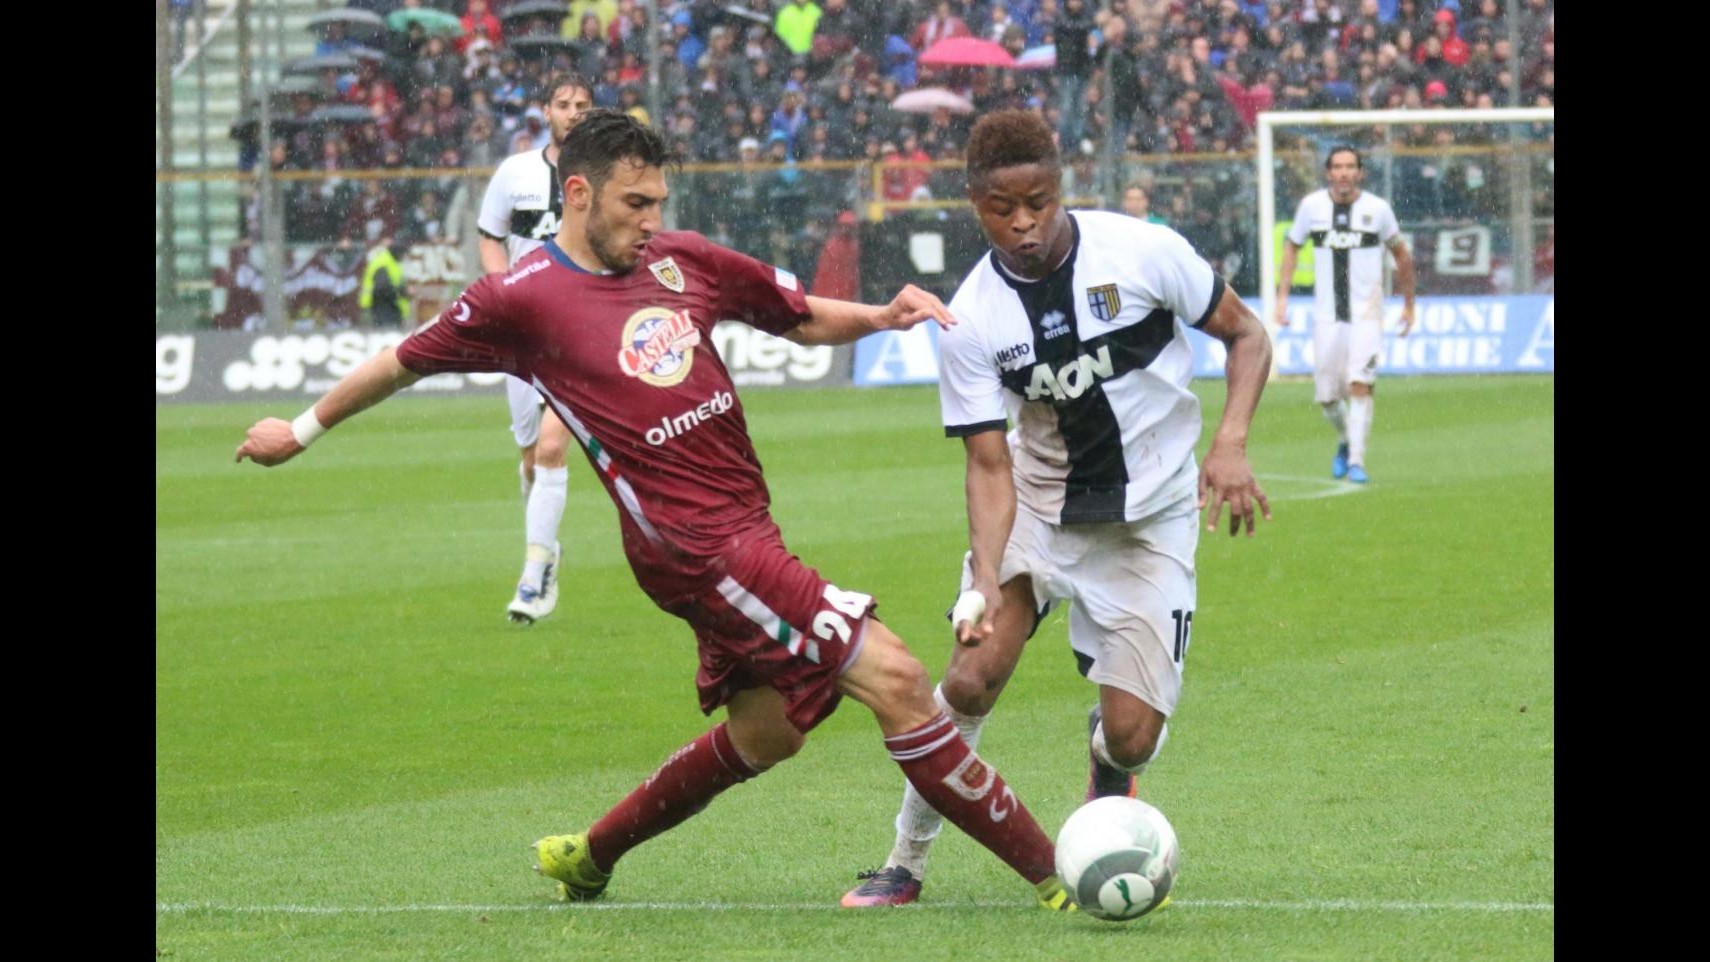 FOTO Derby dell’Enza al Parma: 1-0 alla Reggiana